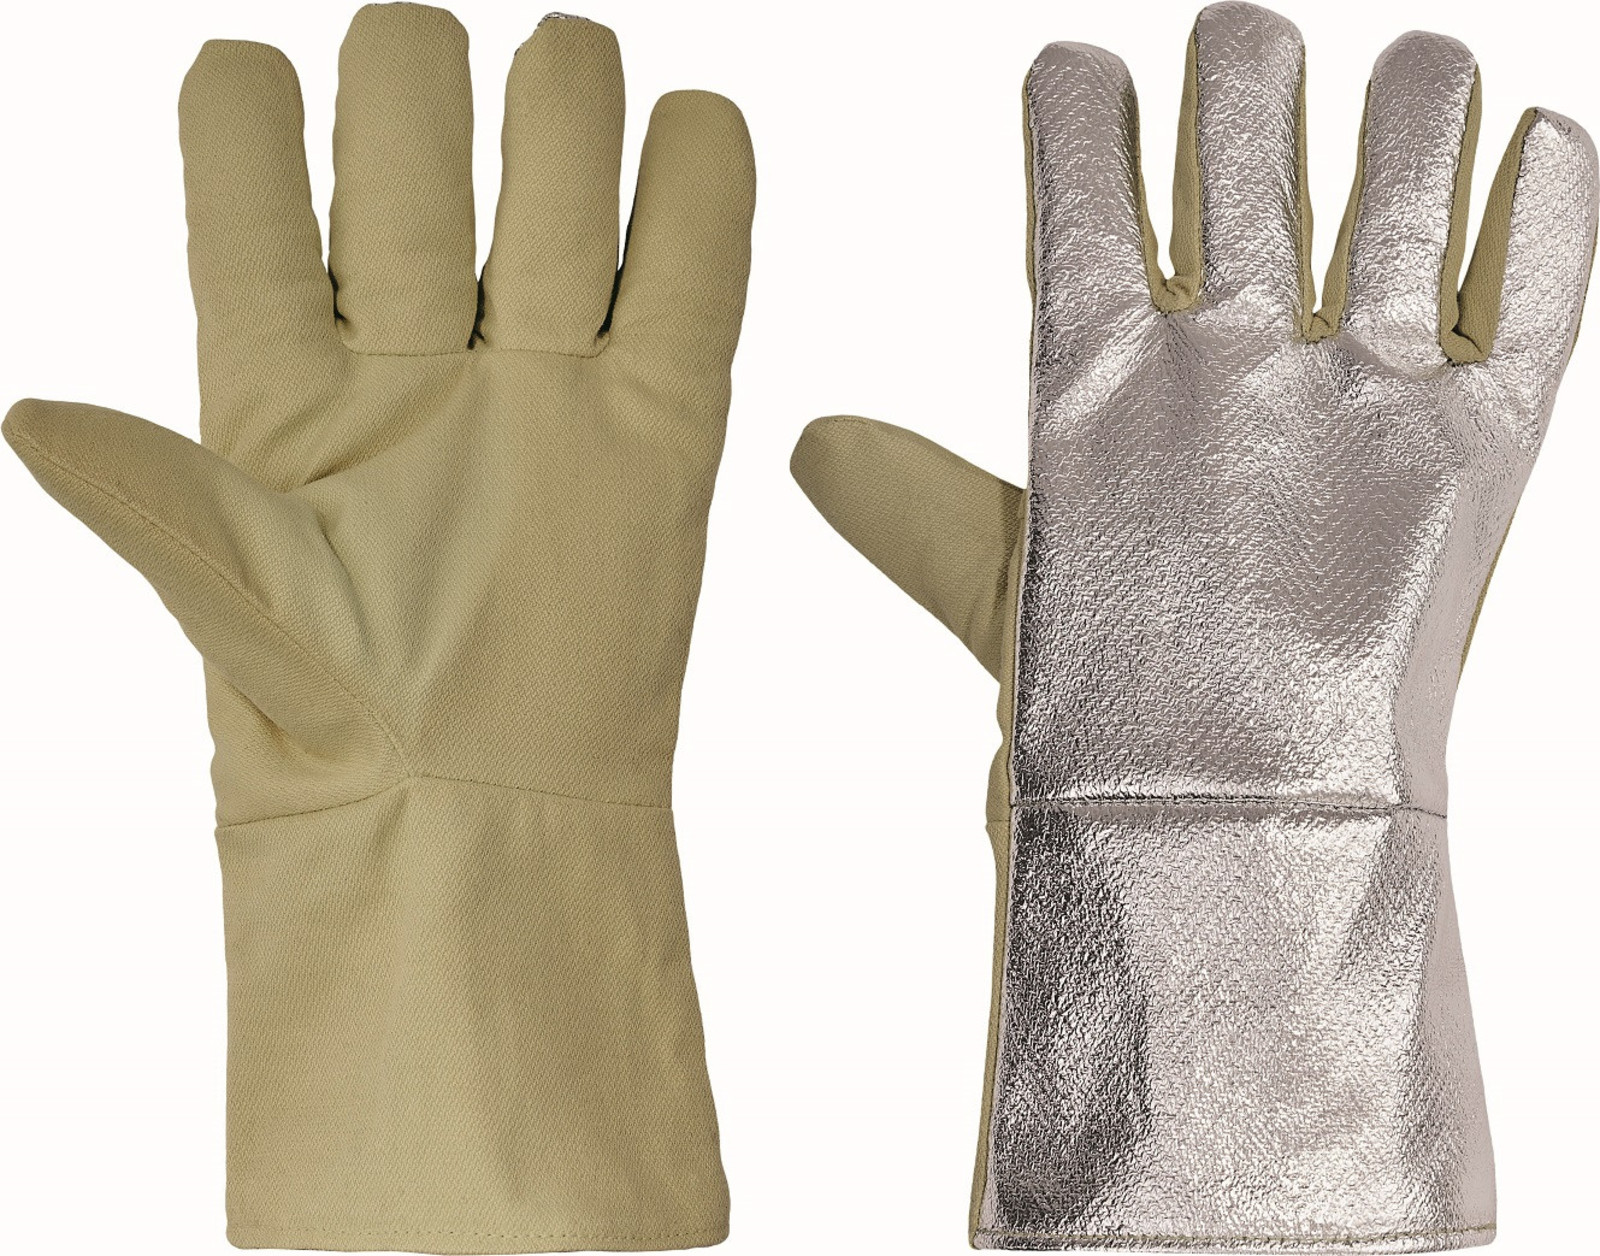 Teplovzdorné rukavice Scaup AL do 250°C - veľkosť: UNI